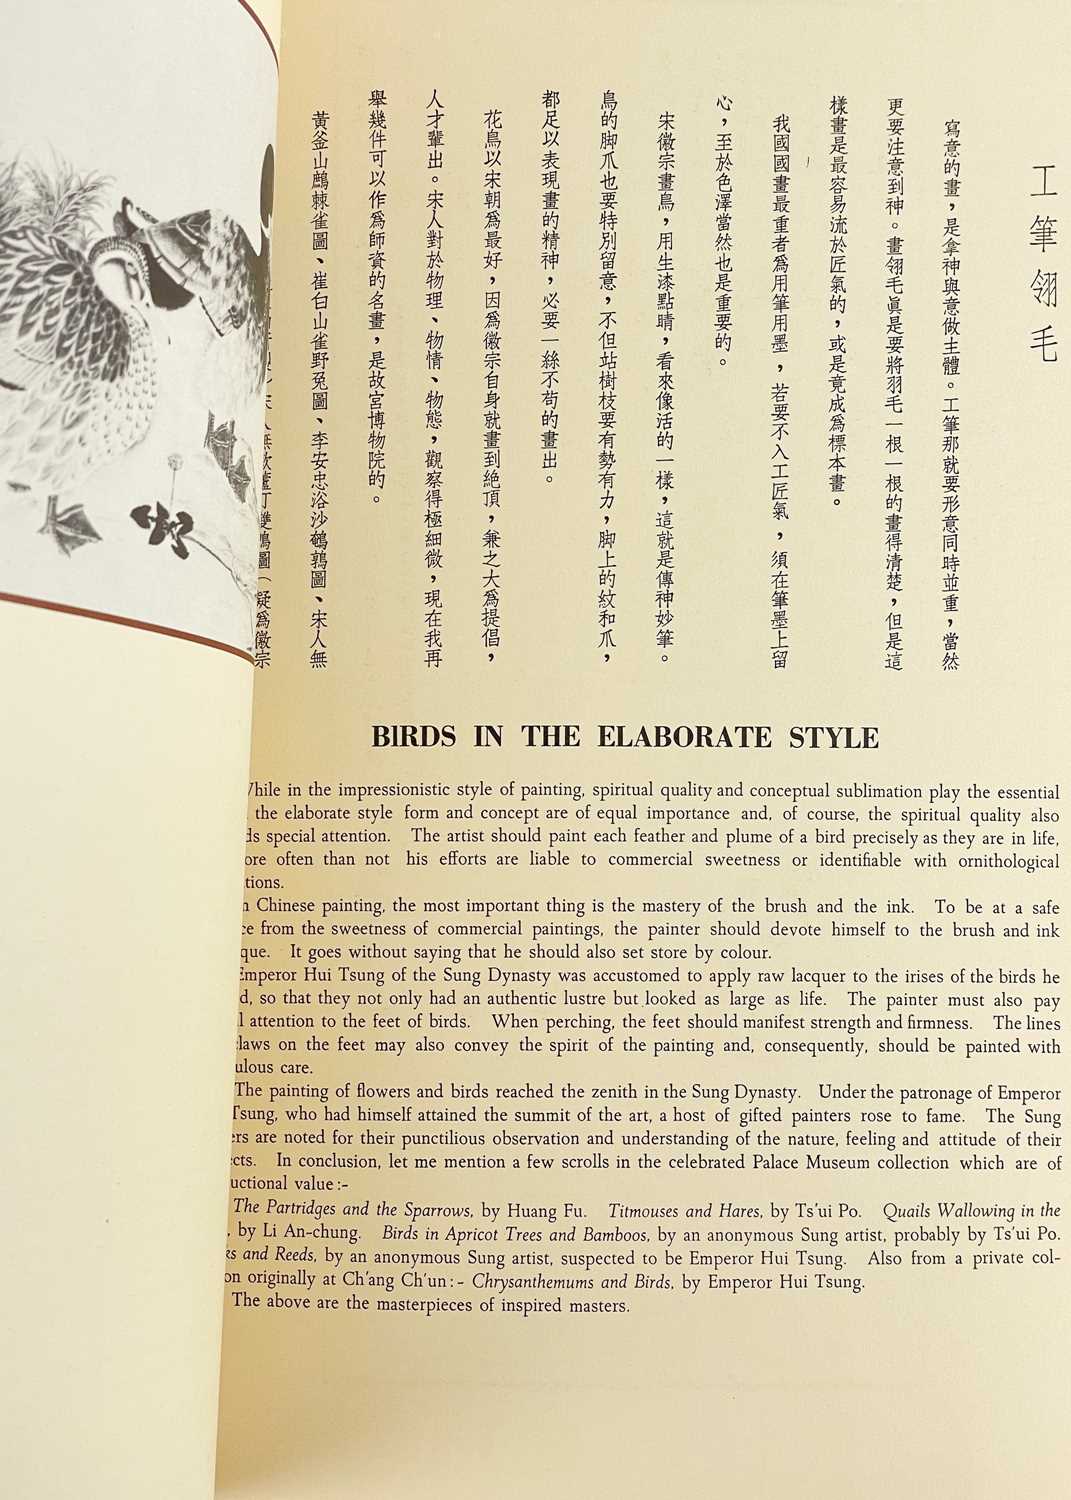 Da-Chien (Professor Chang), 'Chinese Painting' Yee Tin Tong Printing Press Ltd, Hong Kong, 1961., - Image 7 of 11